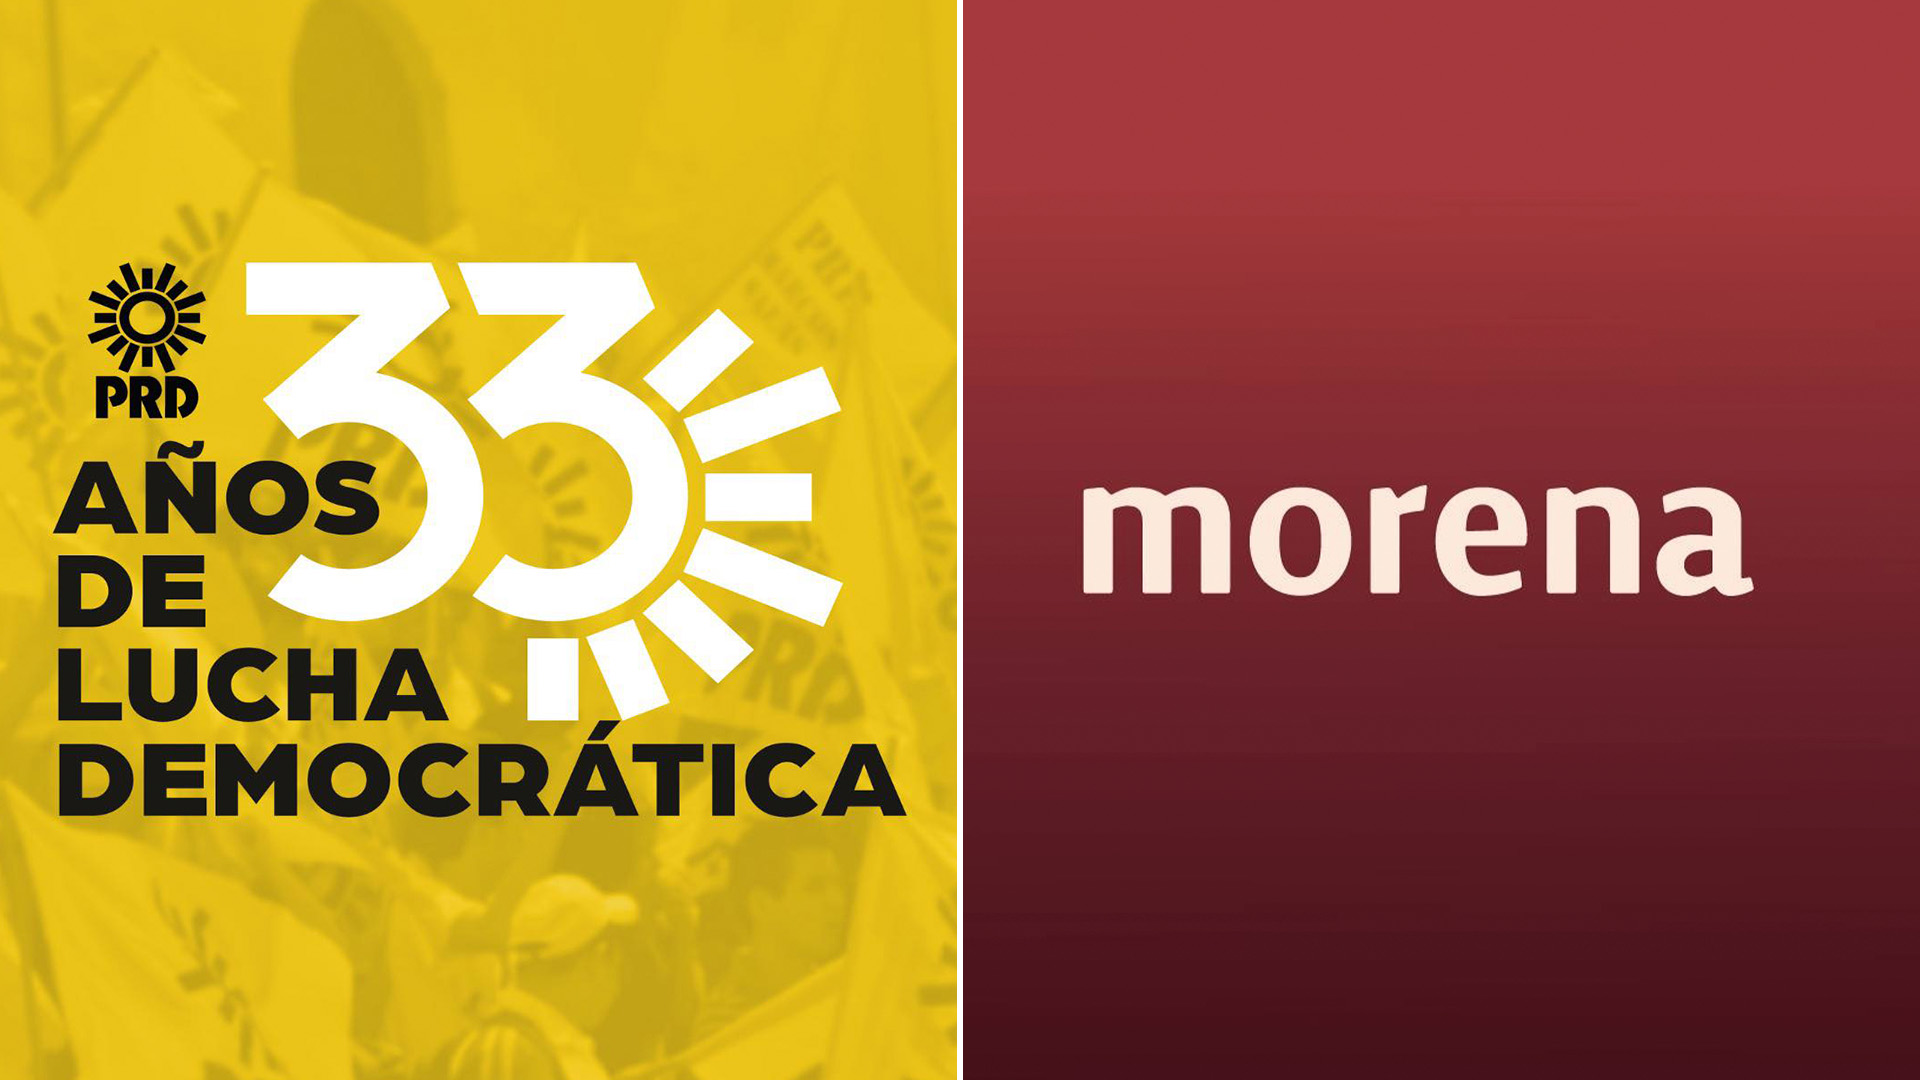 “No lo permitiremos”: PRD acusó a Morena de querer desmantelar el Instituto Electoral de la CDMX